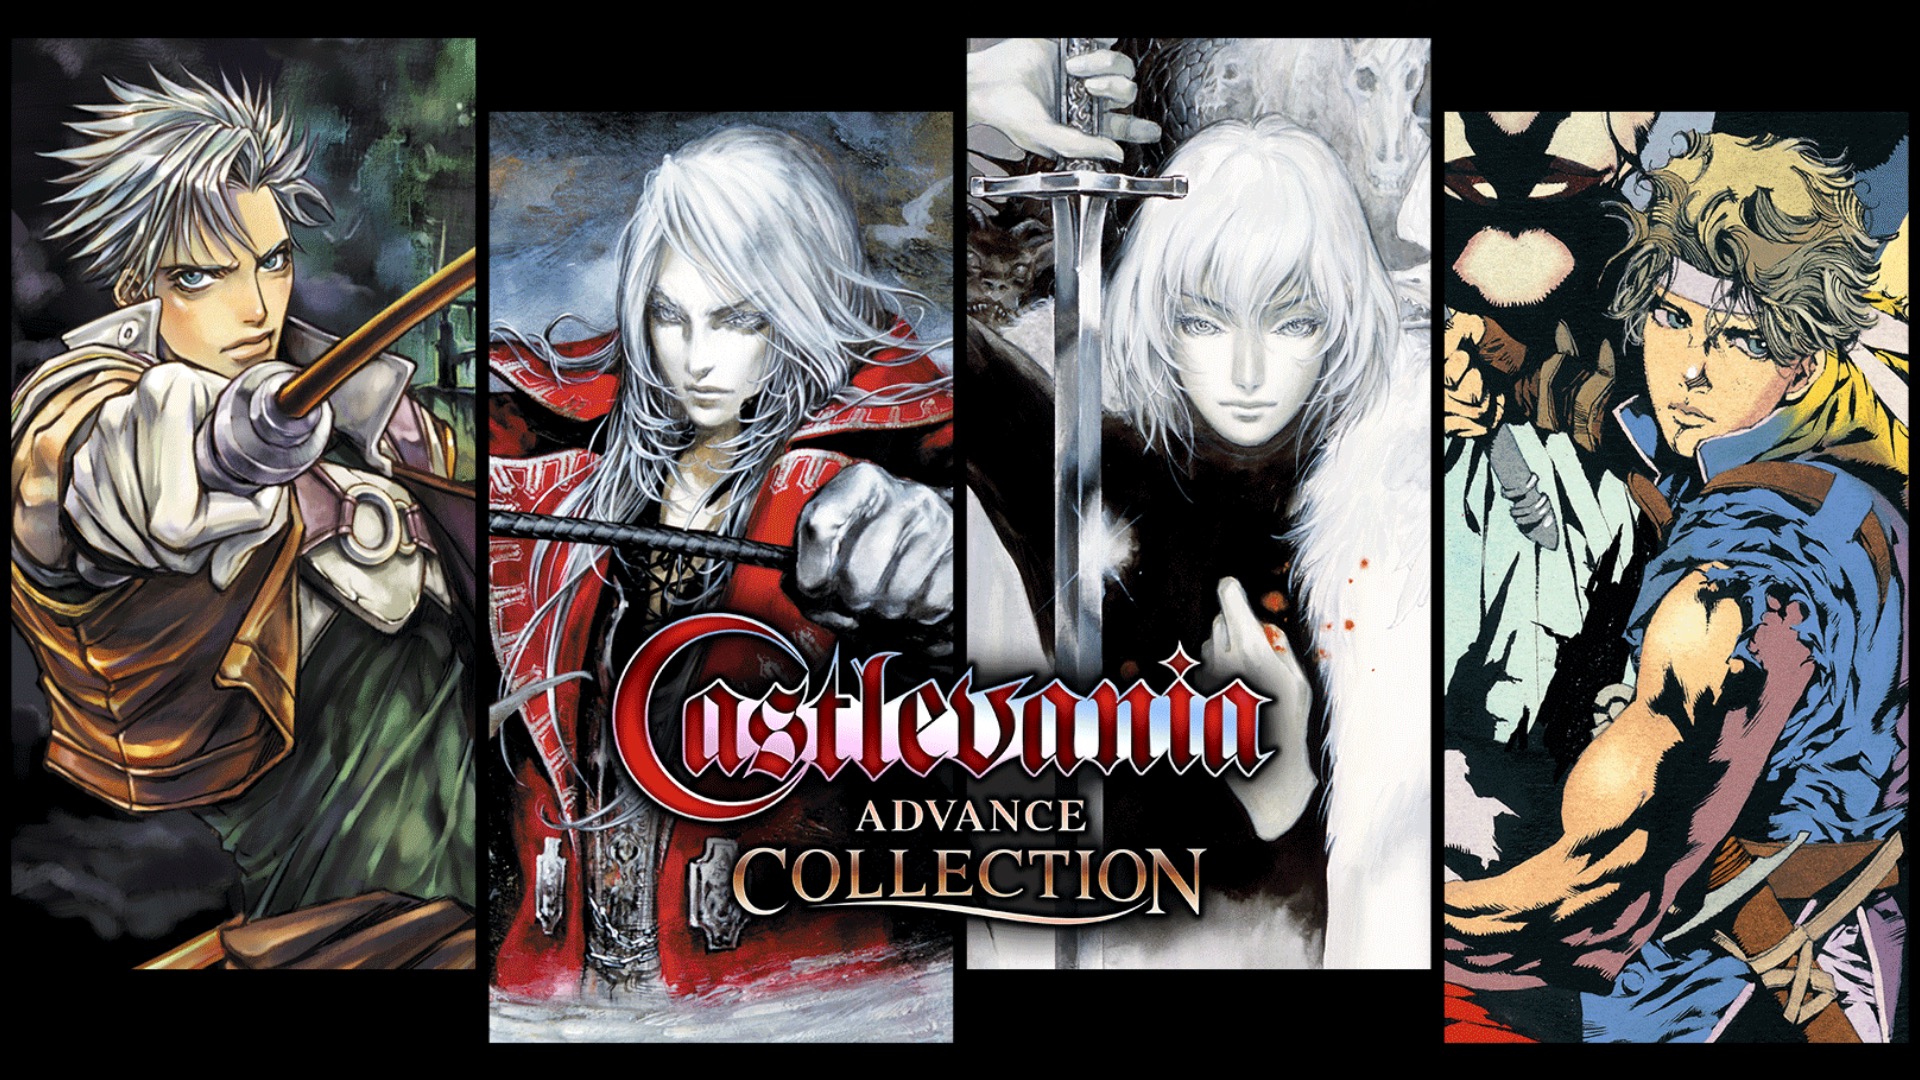 Na veel geruchten is de CastleVania Advanced Collection aangekondigd